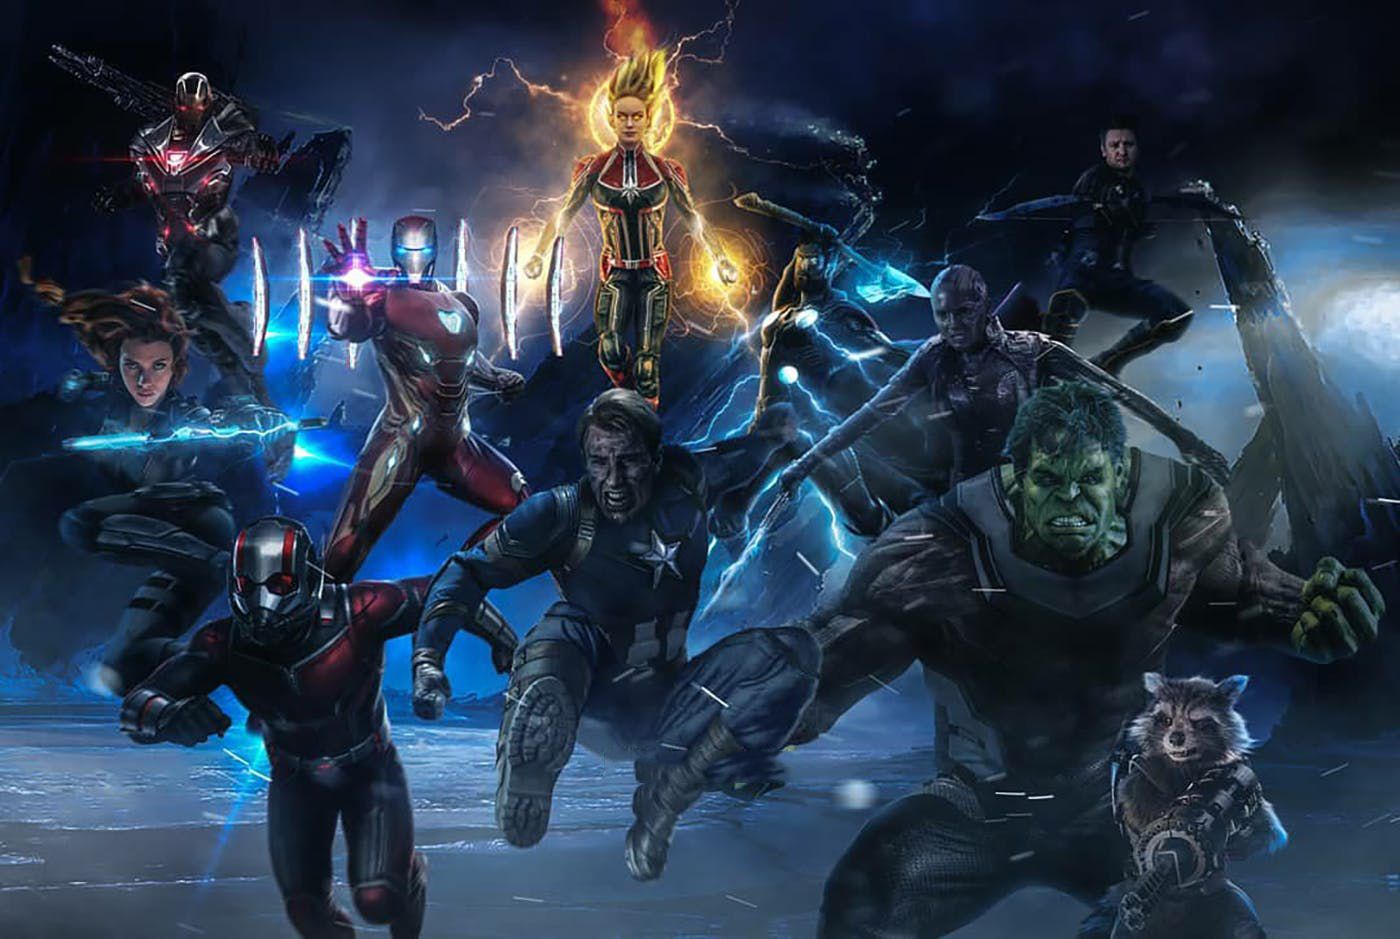 Avengers Endgame War Scene Fanart Wallpapers